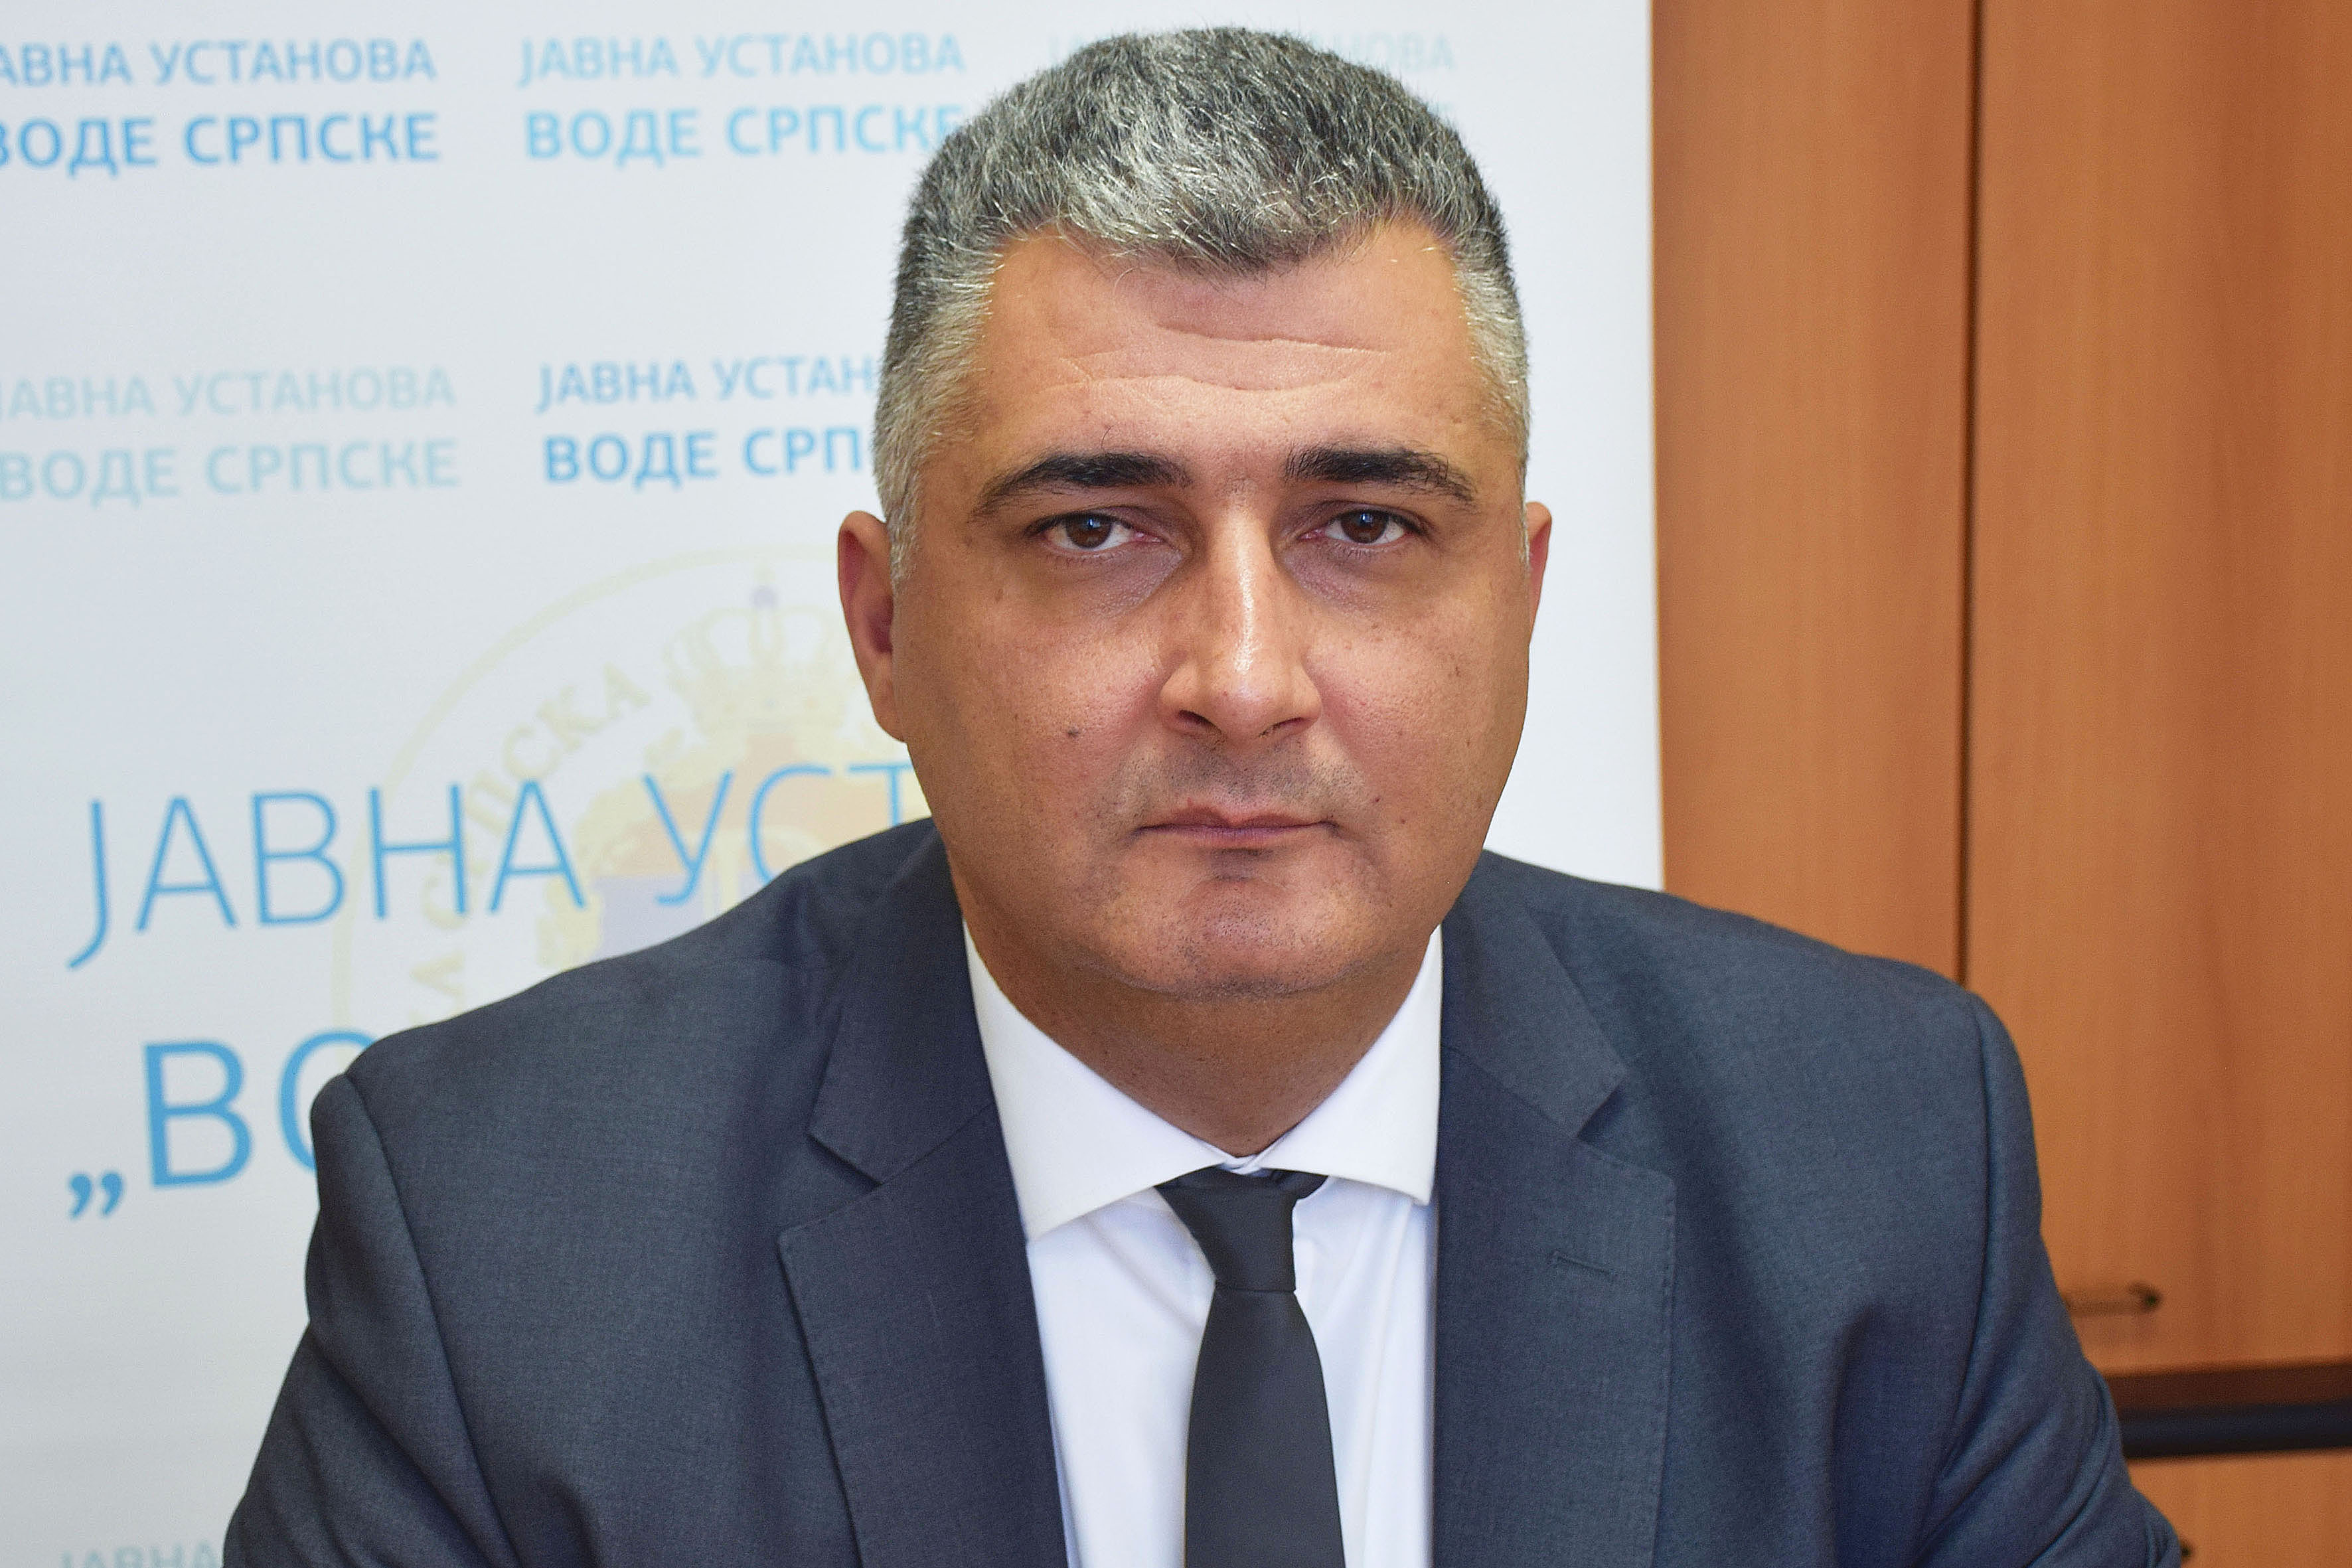 Miroslav Milovanović: Voda je najveći resurs Republike Srpske za budućnost